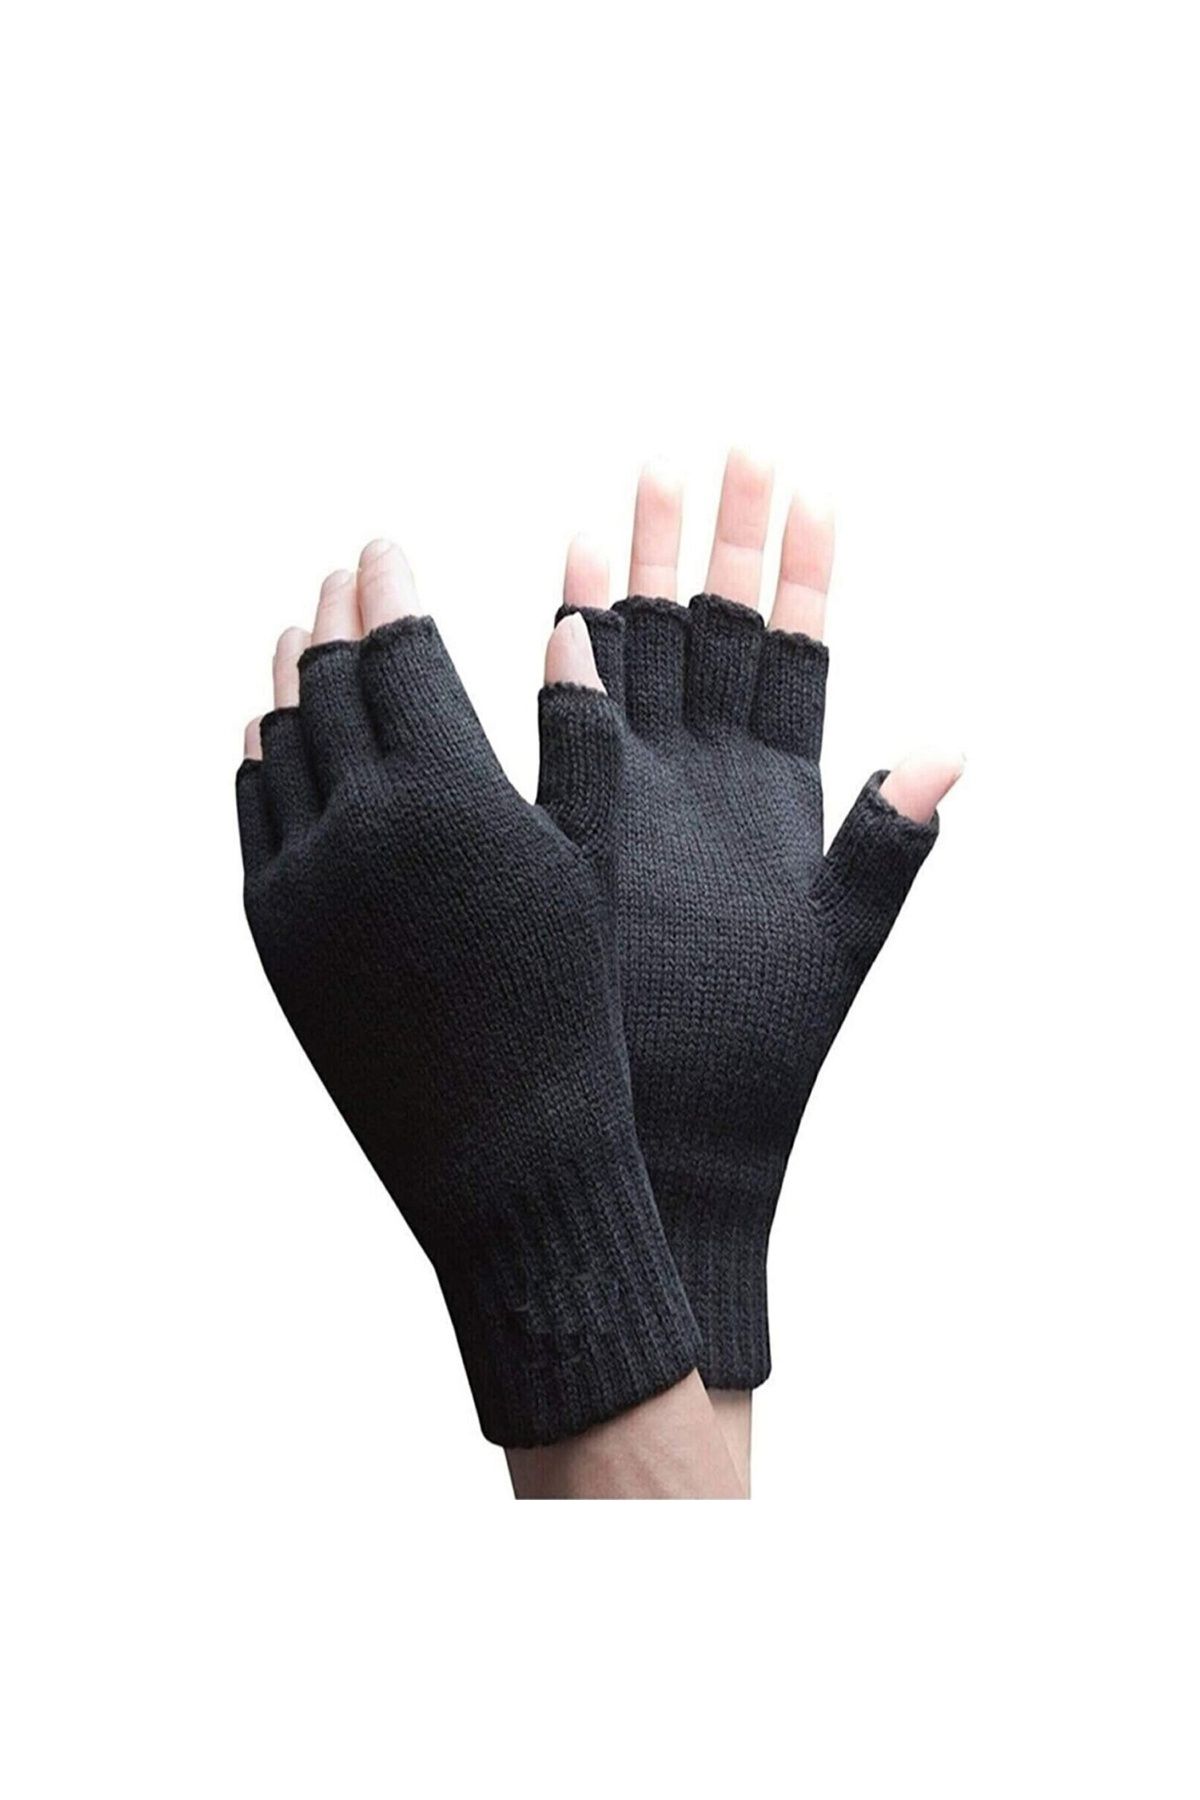 Royaleks Yarım Parmak Kesik Siyah Eldiven Unisex 1 Çift Sıcak Tutan Yün Kışlık Kadın Erkek